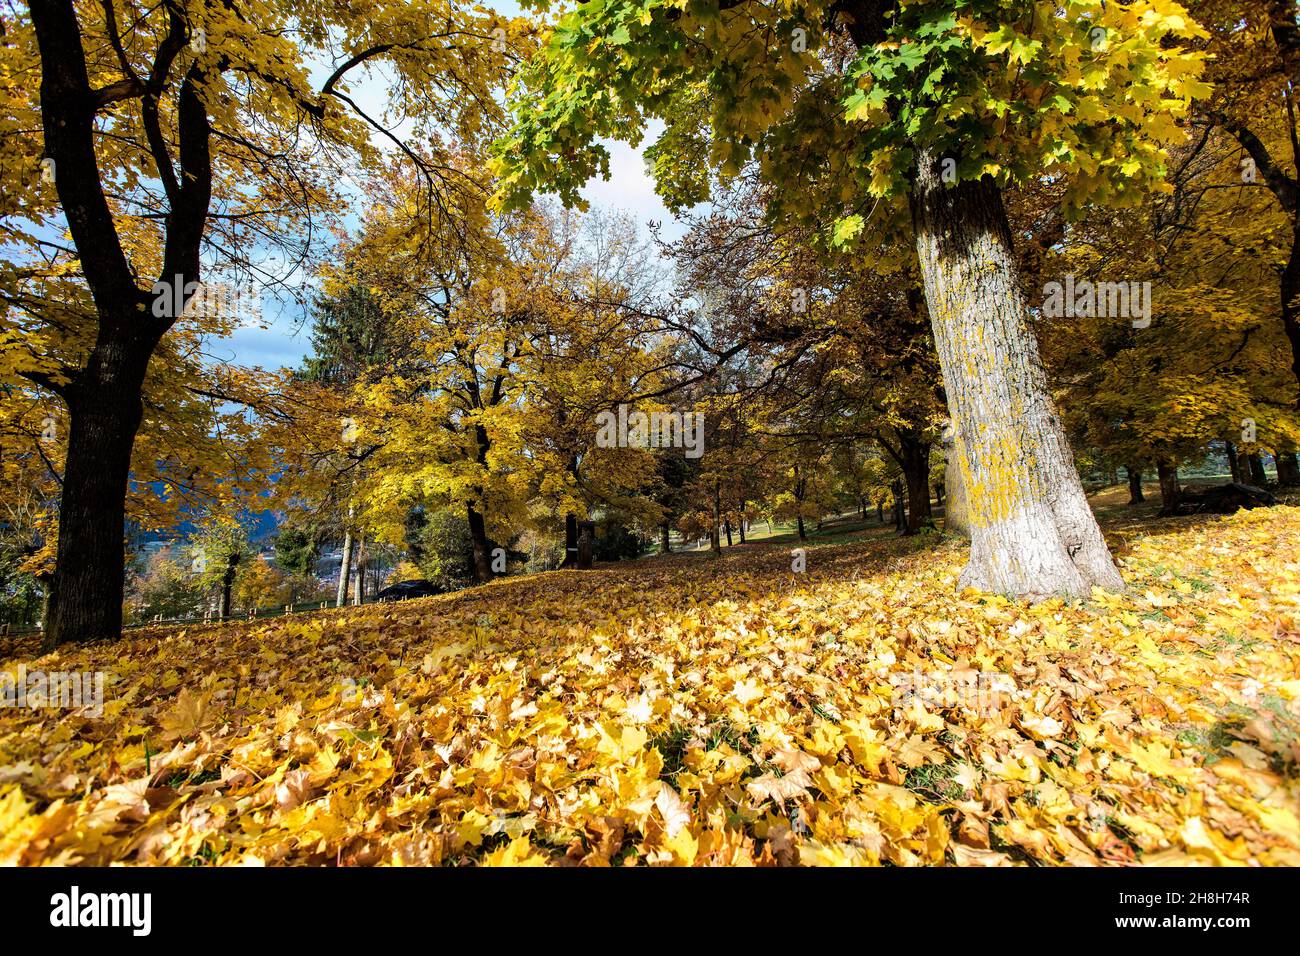 Italia, Trentino Alto Adige, Cavalese, bellissimo sfondo, autunno in un parco con alberi e foglie d'arancia caduta sul terreno Foto © Federico Meneg Foto Stock